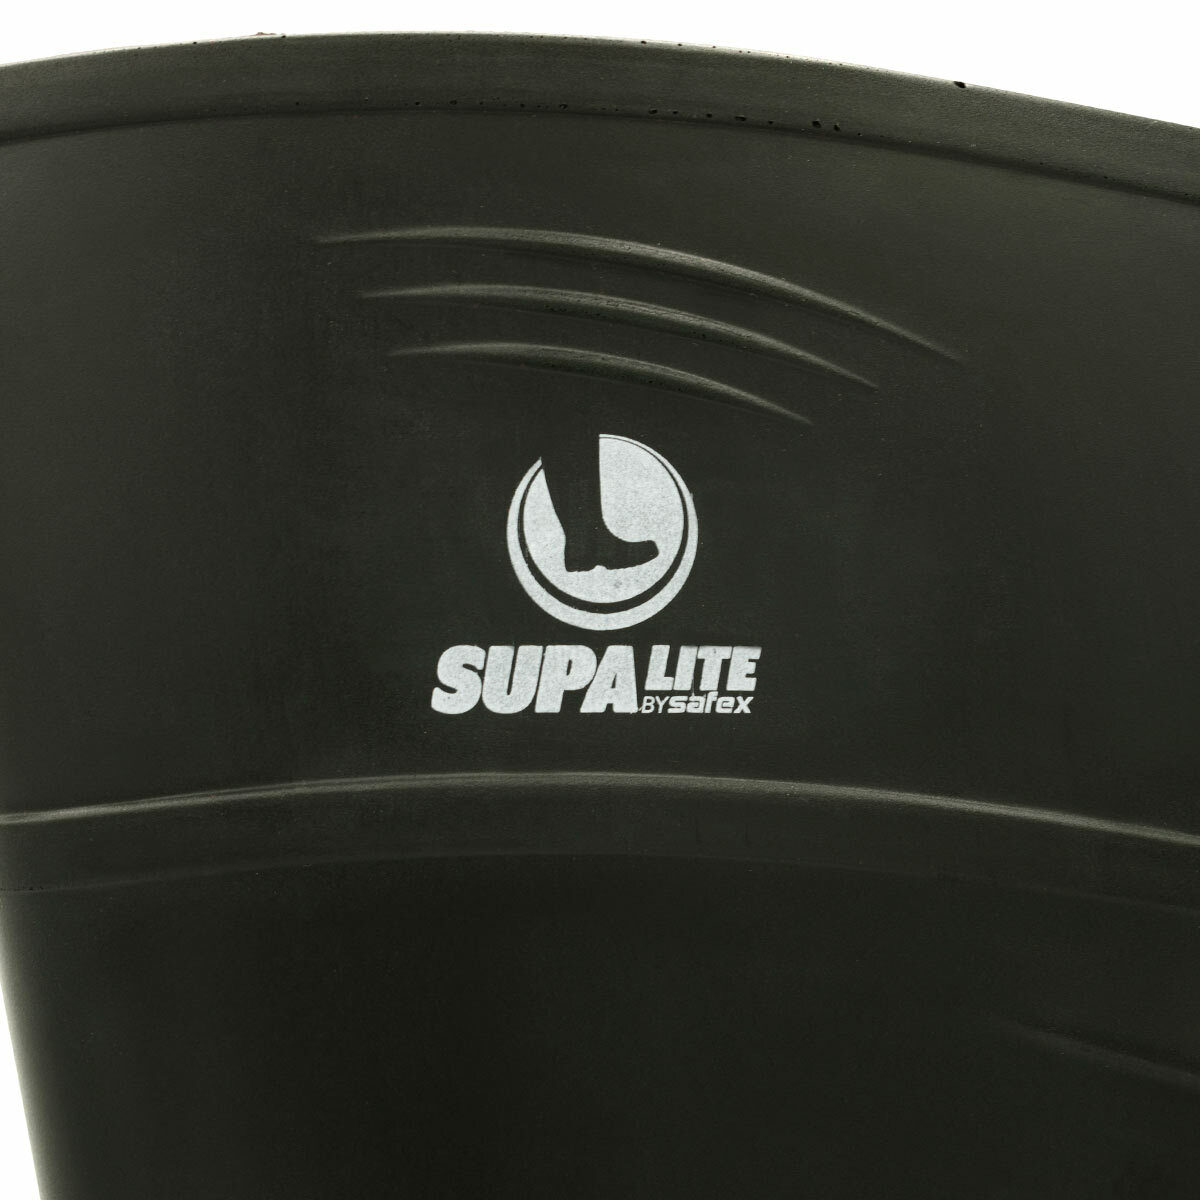 Safex SupaLite PU Gumboots - Green